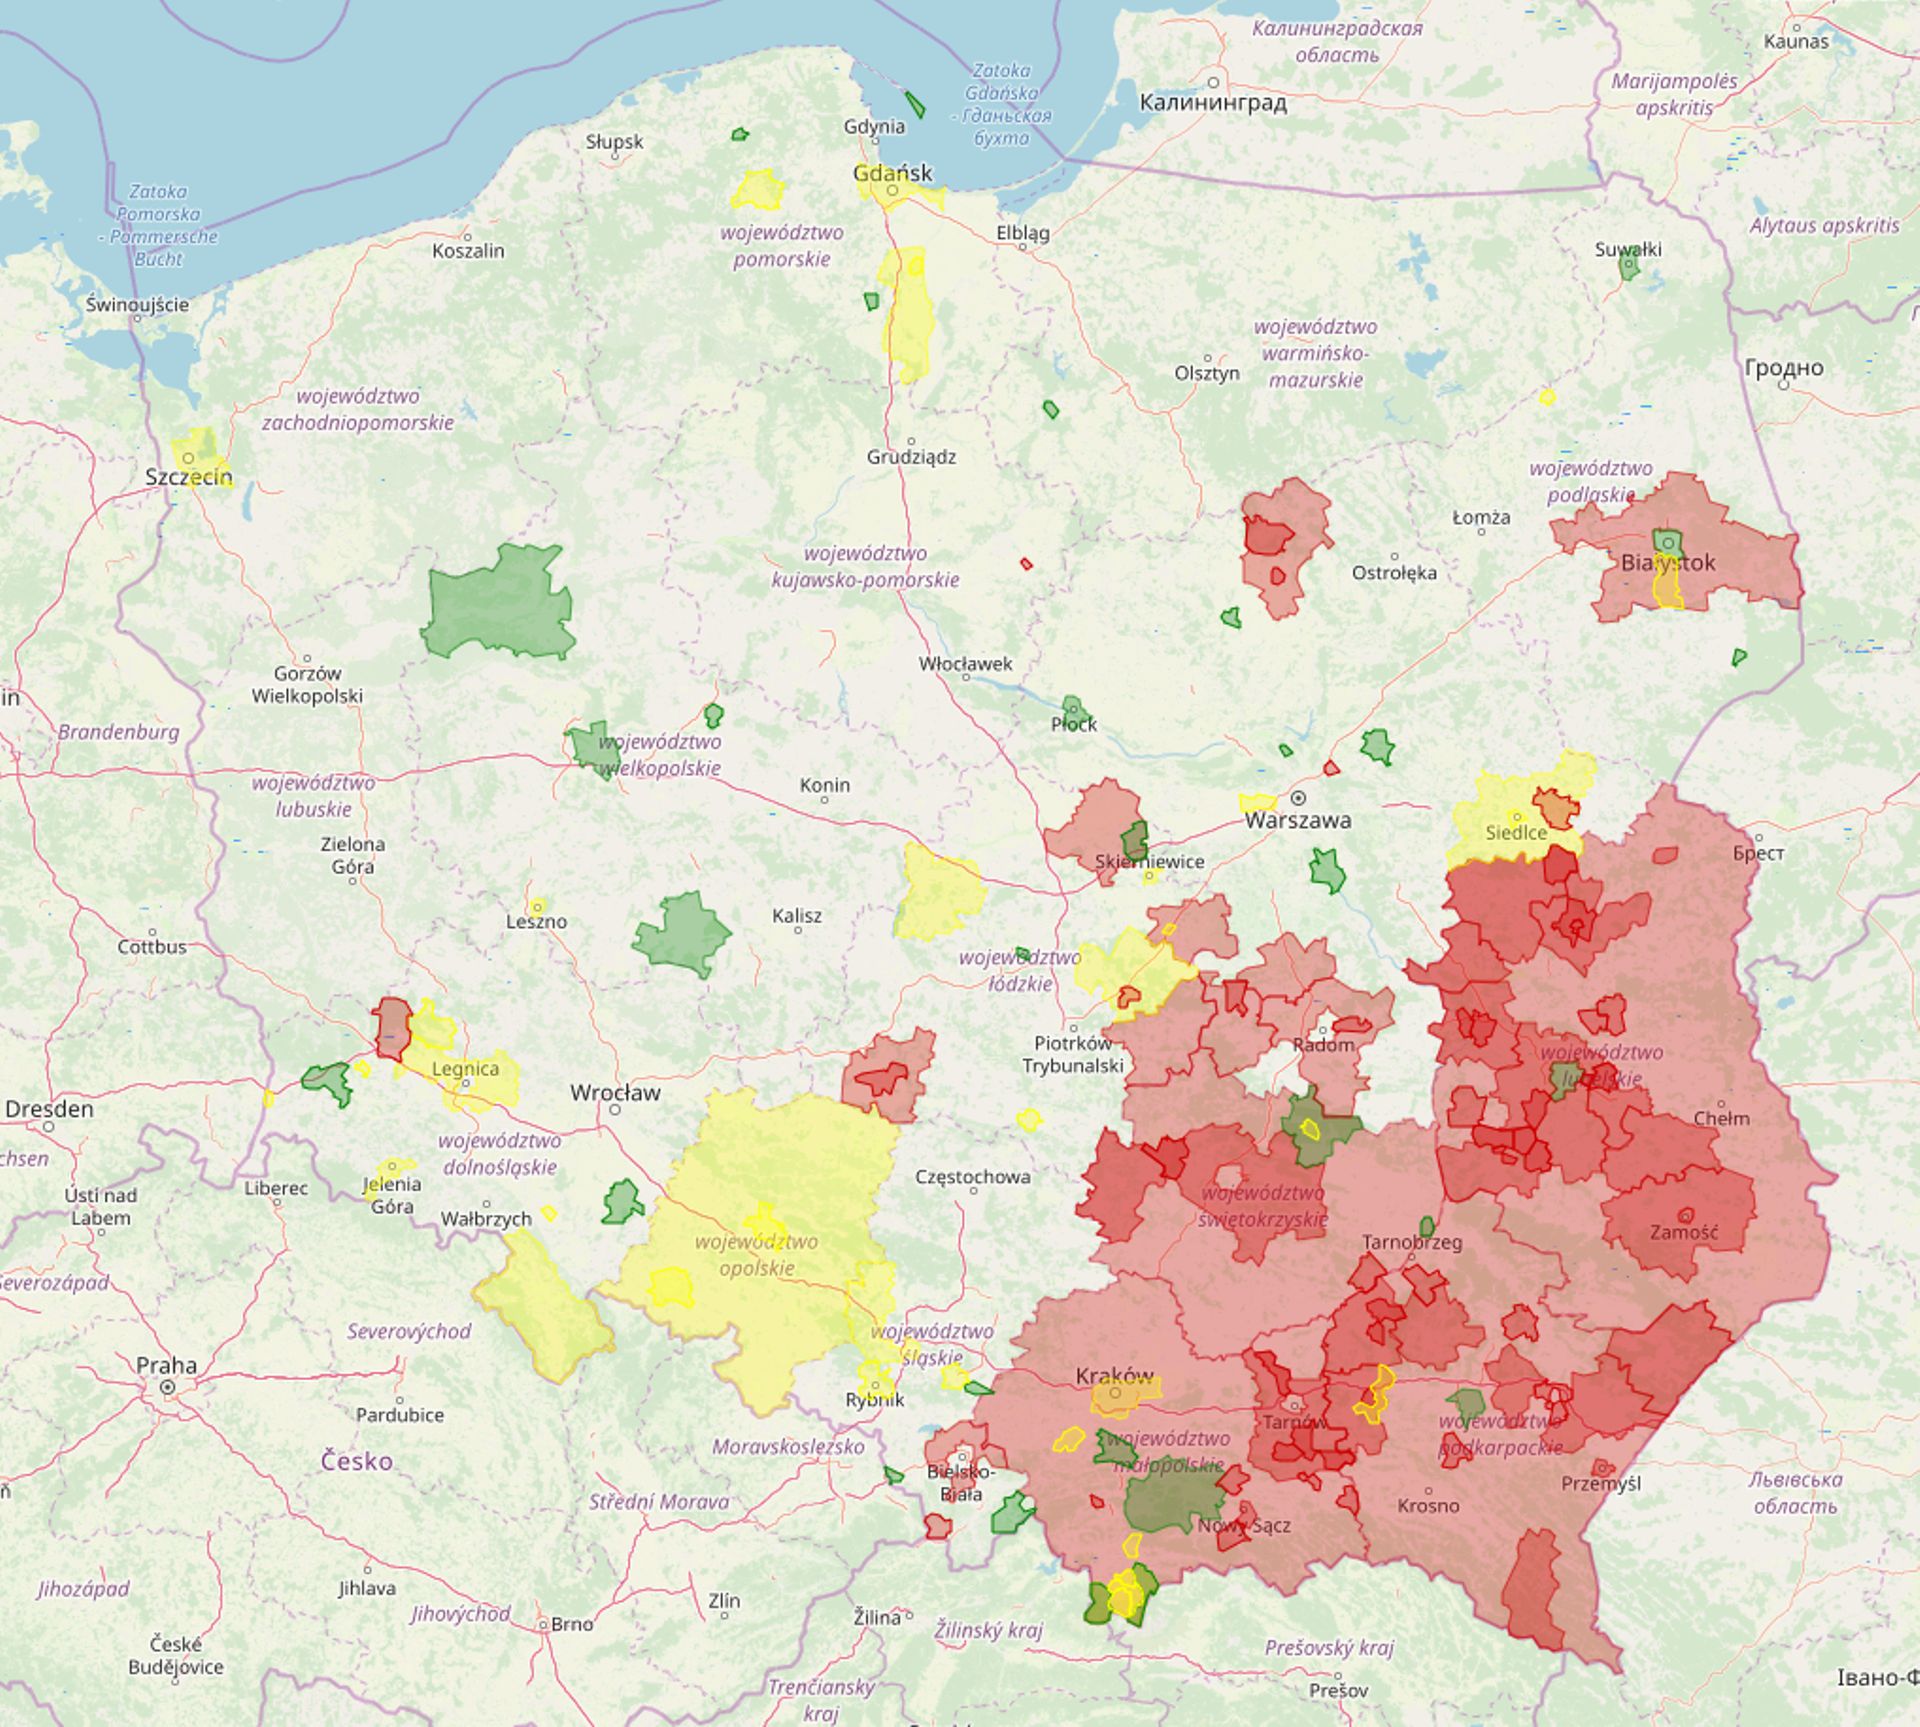 "Zone sans LGBTI": 80 communes sur 2000. Rouge: la zone est sans LGBTI; jaune: en discussion; vert: la zone a refusé l'appellation "sans LGBTI".